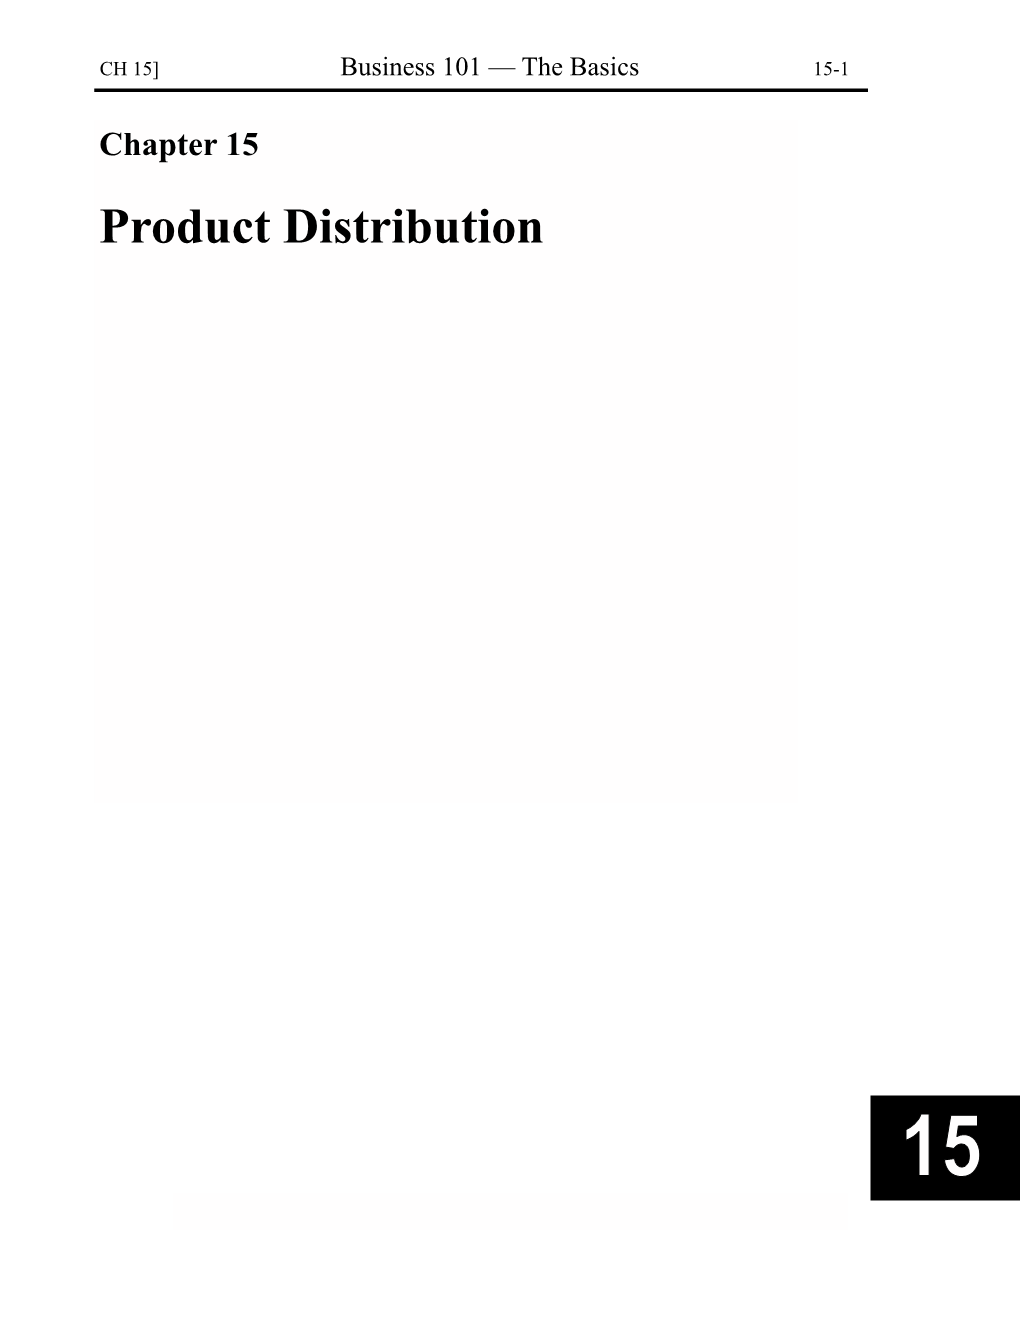 Product Distribution 15-2 Product Distribution [CH 15